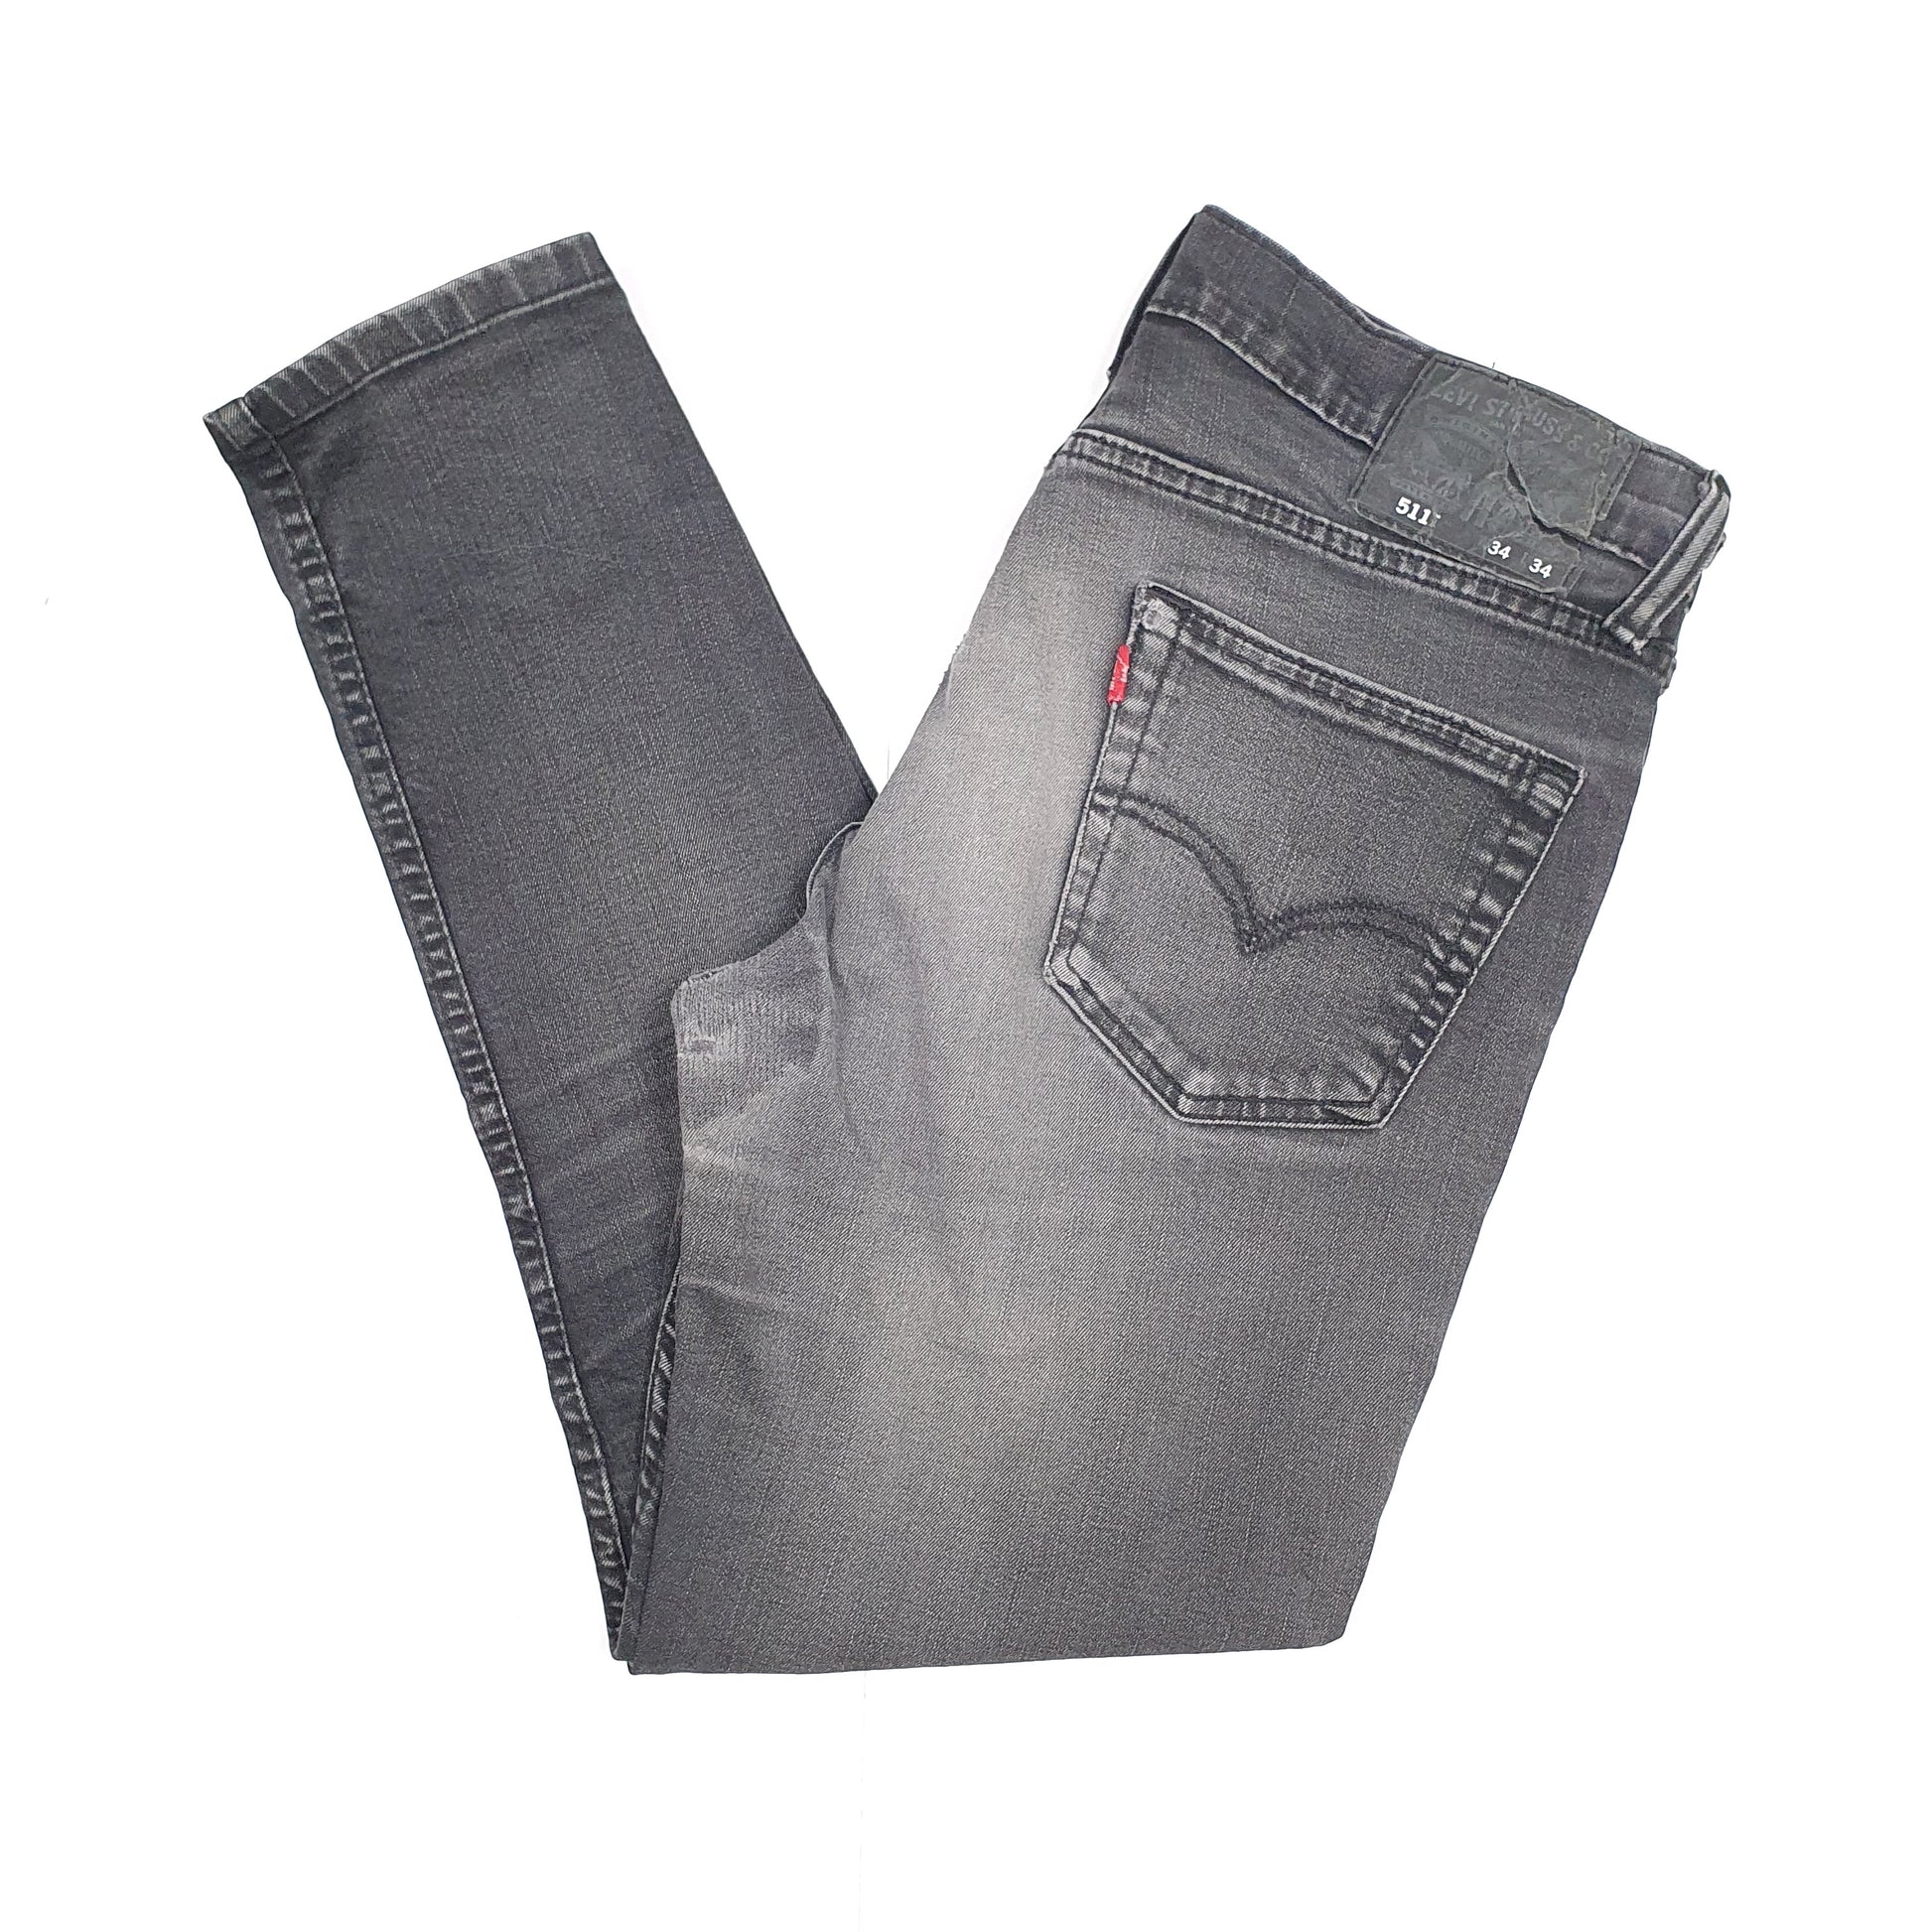 Grey Levis 511 Jeans